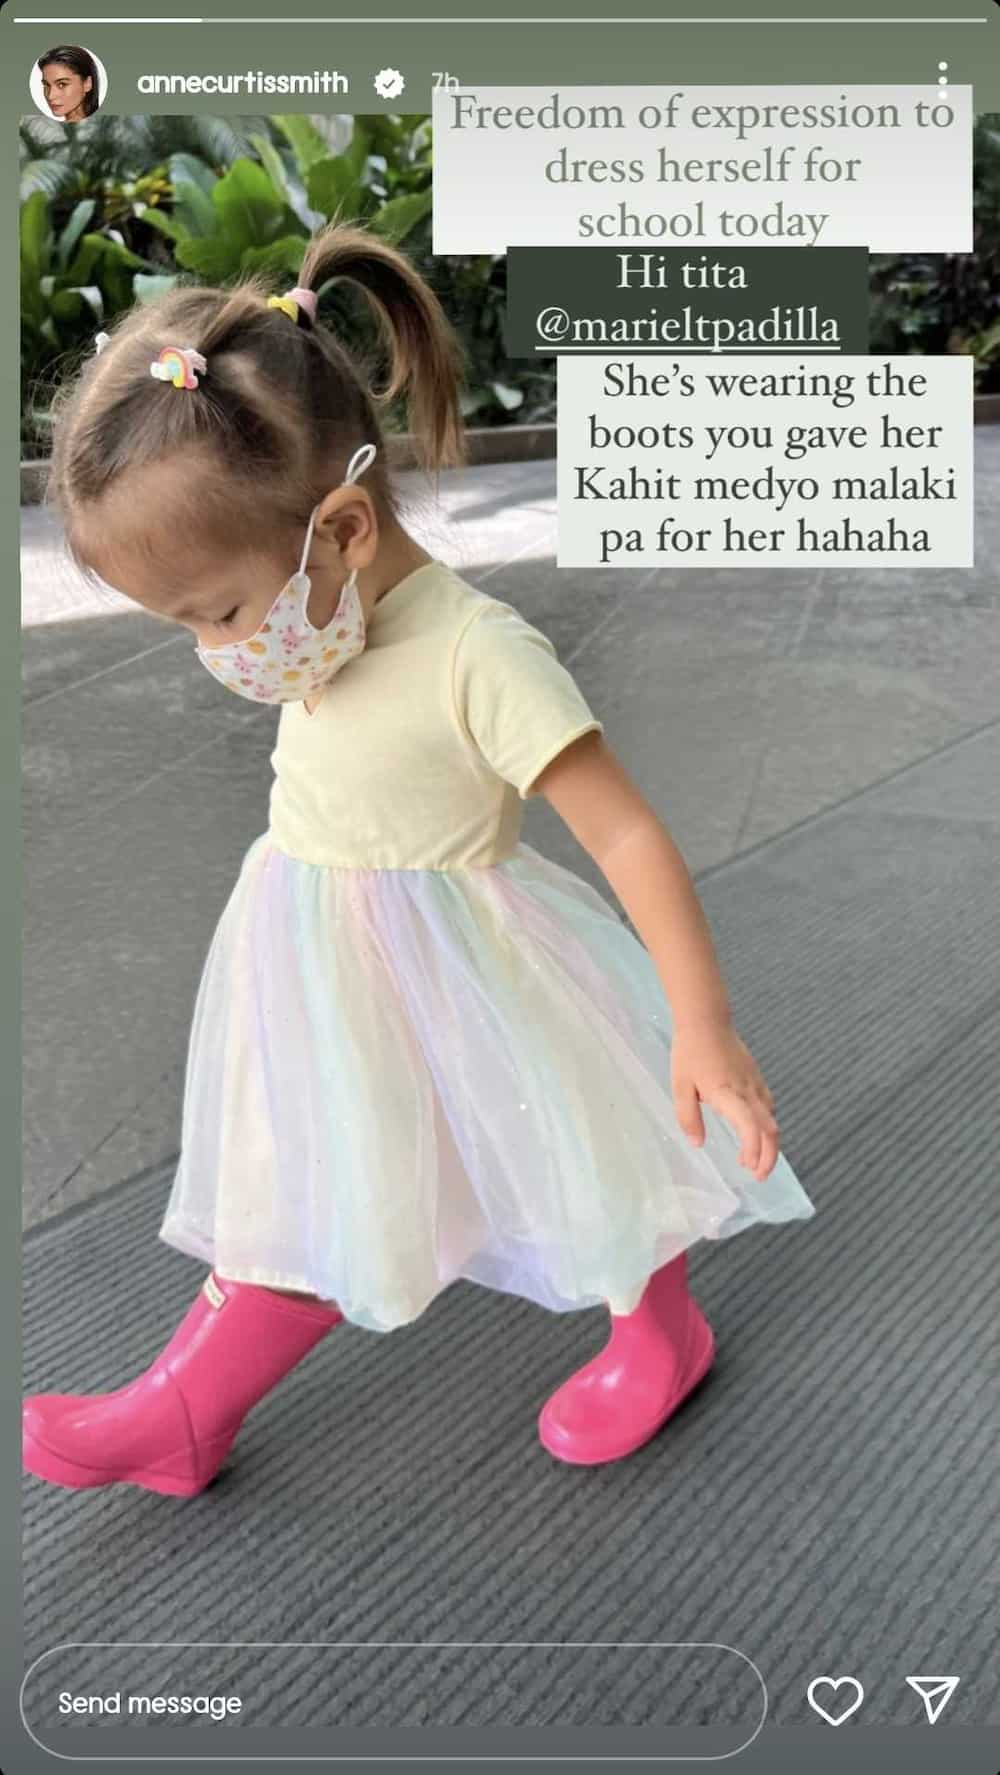 Dahlia Amélie, piniling suotin ang boots na bigay ni Mariel Padilla para sa school